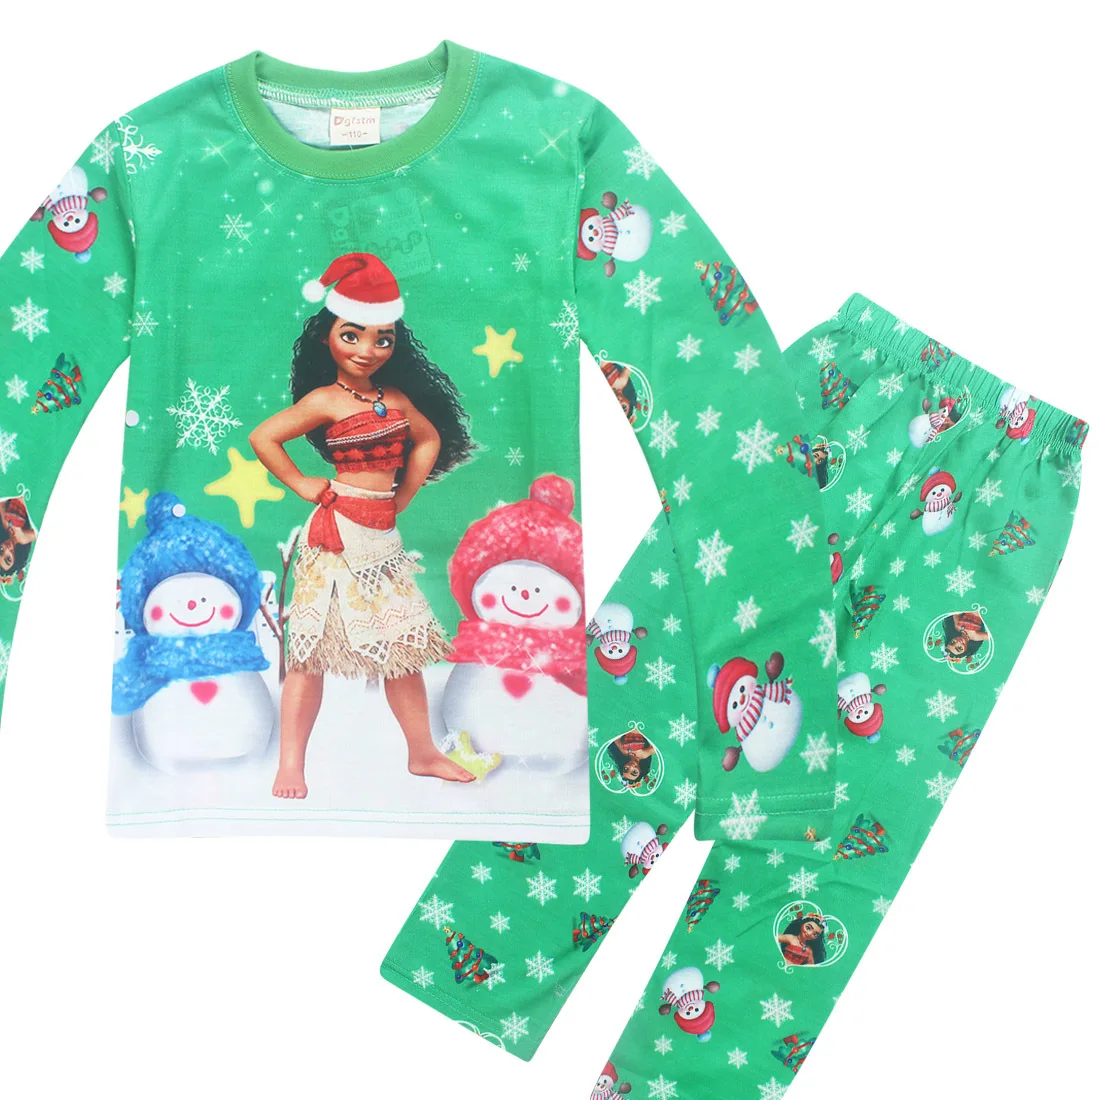 Kids Girls Pajamas Sets Princess Pyjamas Children Christmas Pijama Moana Vaiana Sleepwear Home Clothing Cartoon Cotton Clothing _ -